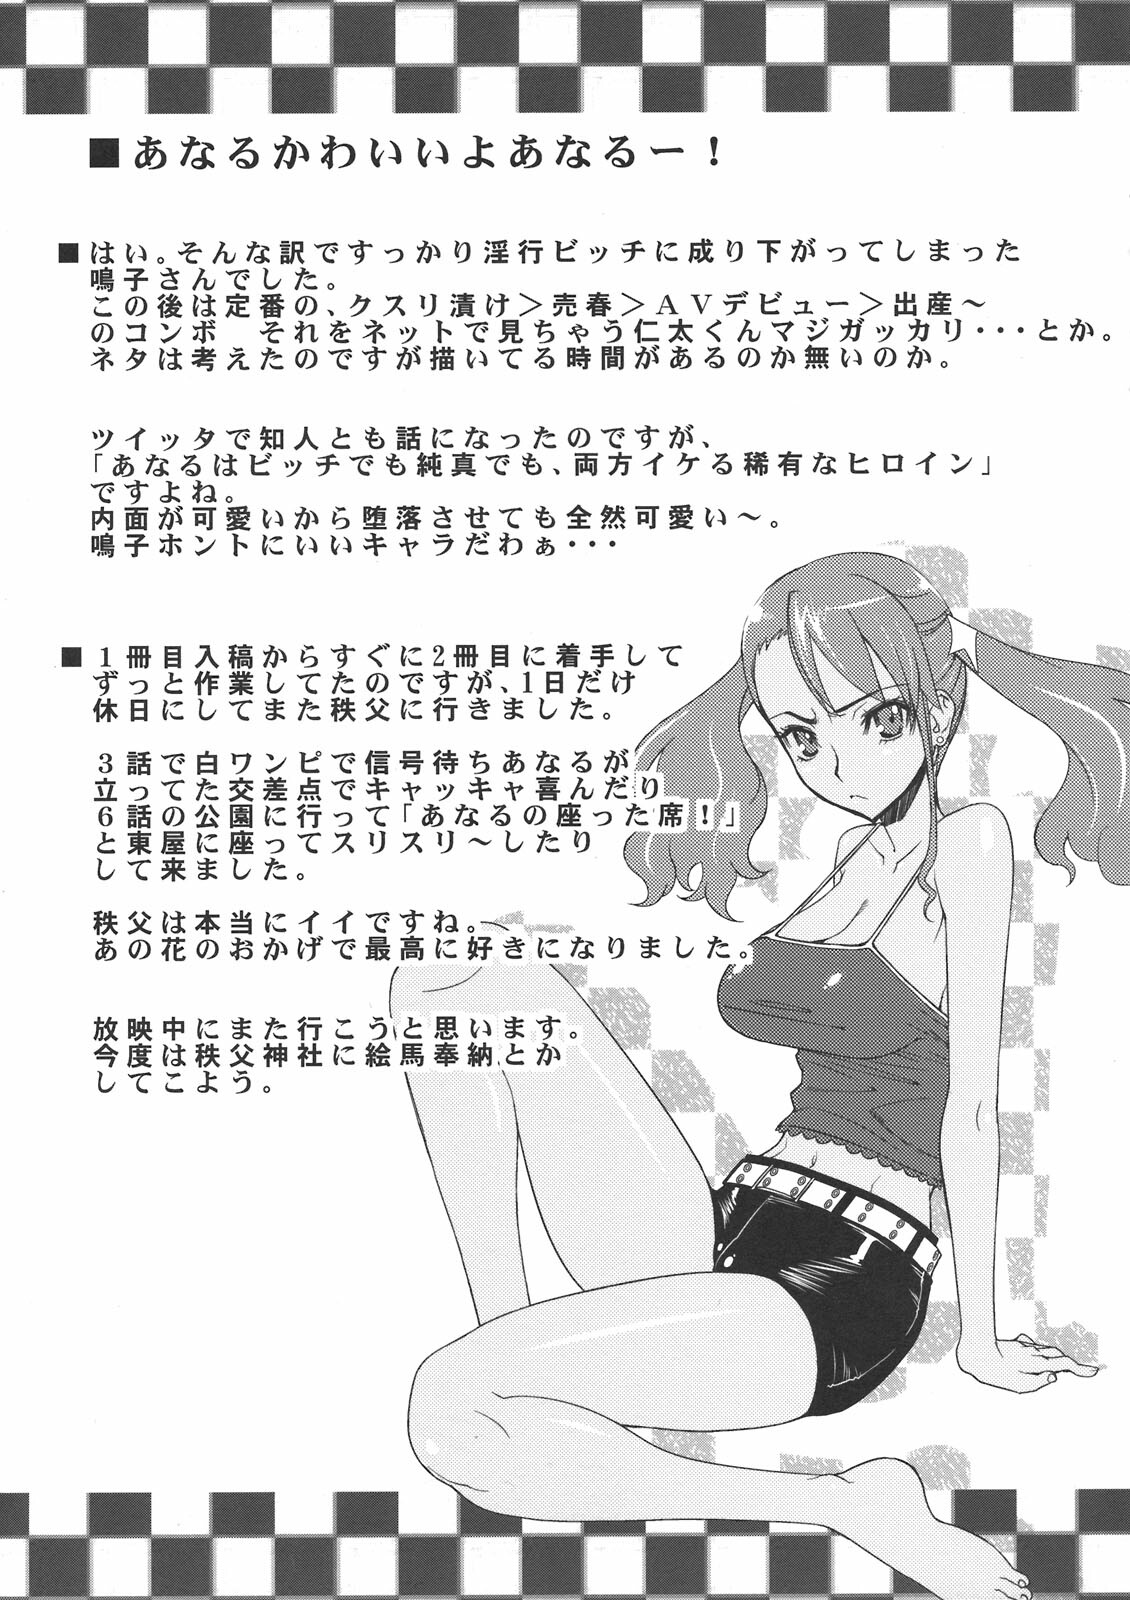 (SC52) [Sanazura Doujinshi Hakkoujo (Sanazura Hiroyuki)] Anal Sex 2 (Ano Hi Mita Hana no Namae wo Bokutachi wa Mada Shiranai) page 29 full